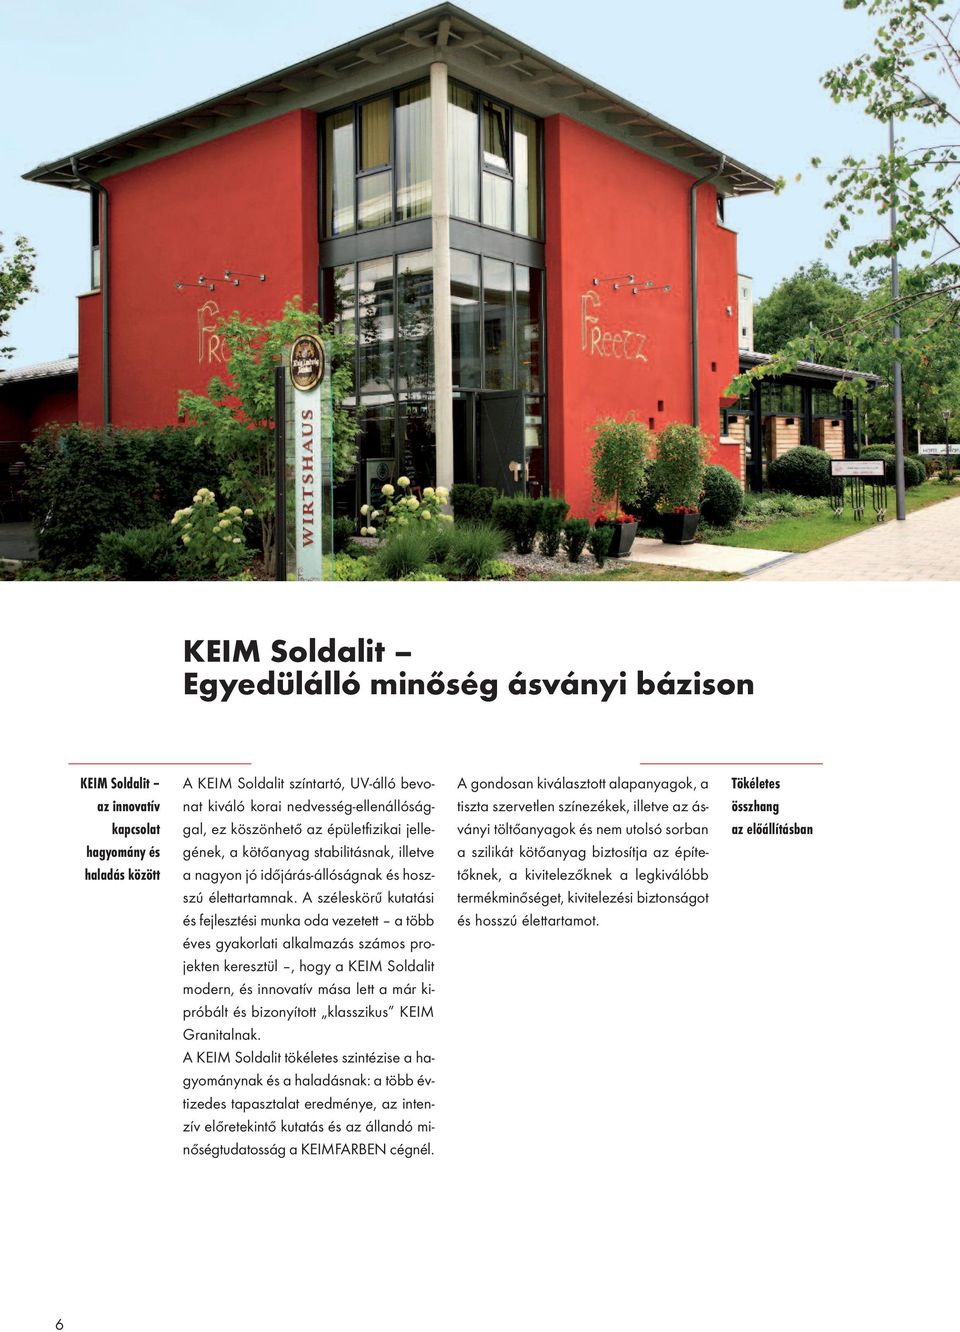 A széleskörű kutatási és fejlesztési munka oda vezetett a több éves gyakorlati alkalmazás számos projekten keresztül, hogy a KEIM Soldalit modern, és innovatív mása lett a már kipróbált és